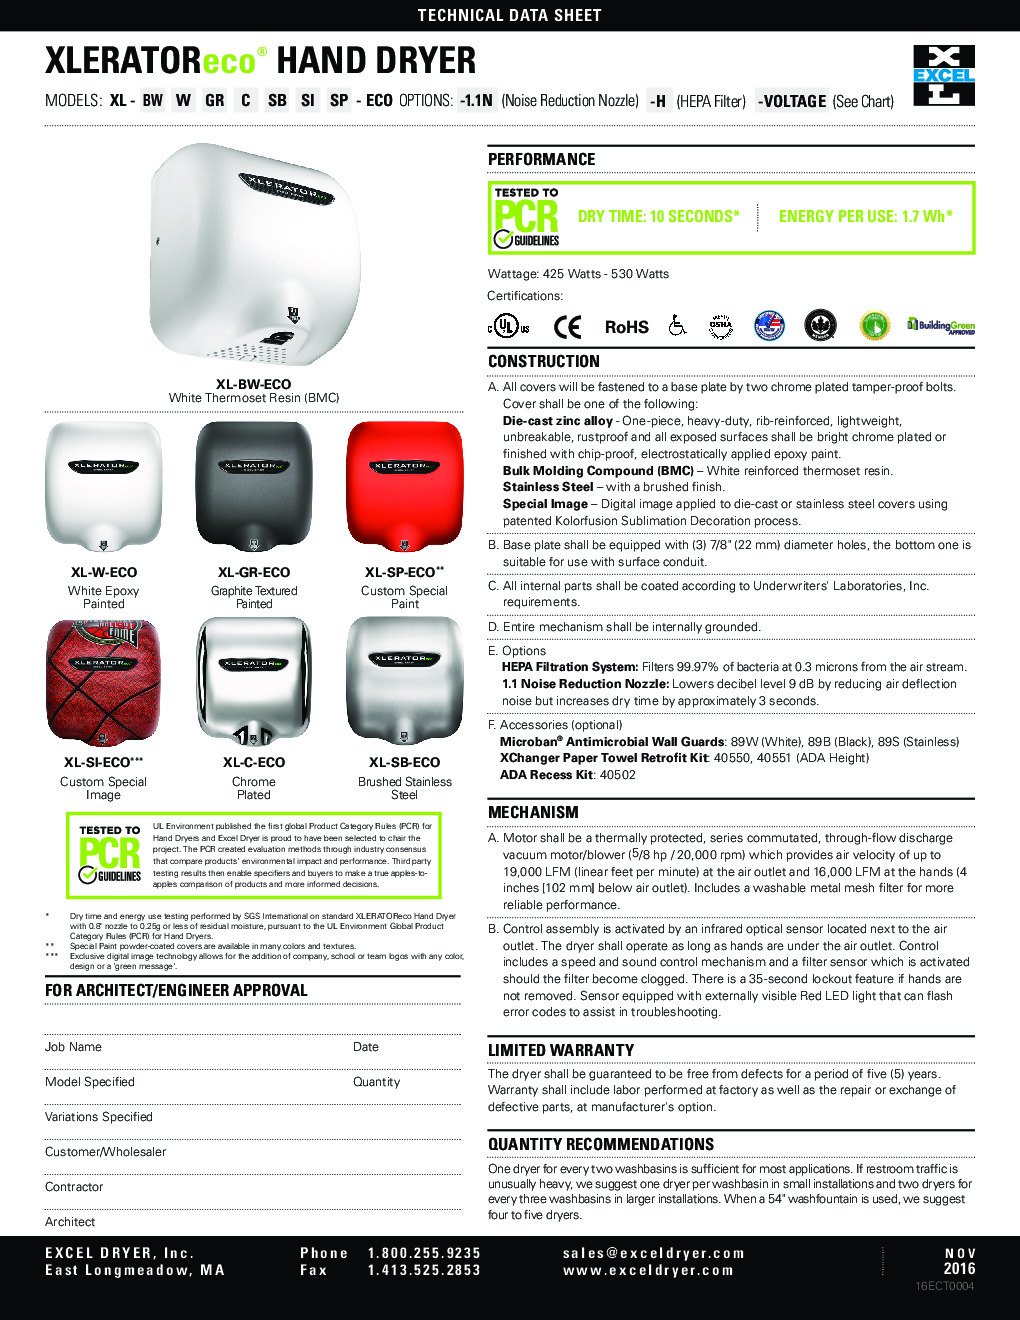 Excel Dryer XL-SP-ECO-RB Hand Dryer